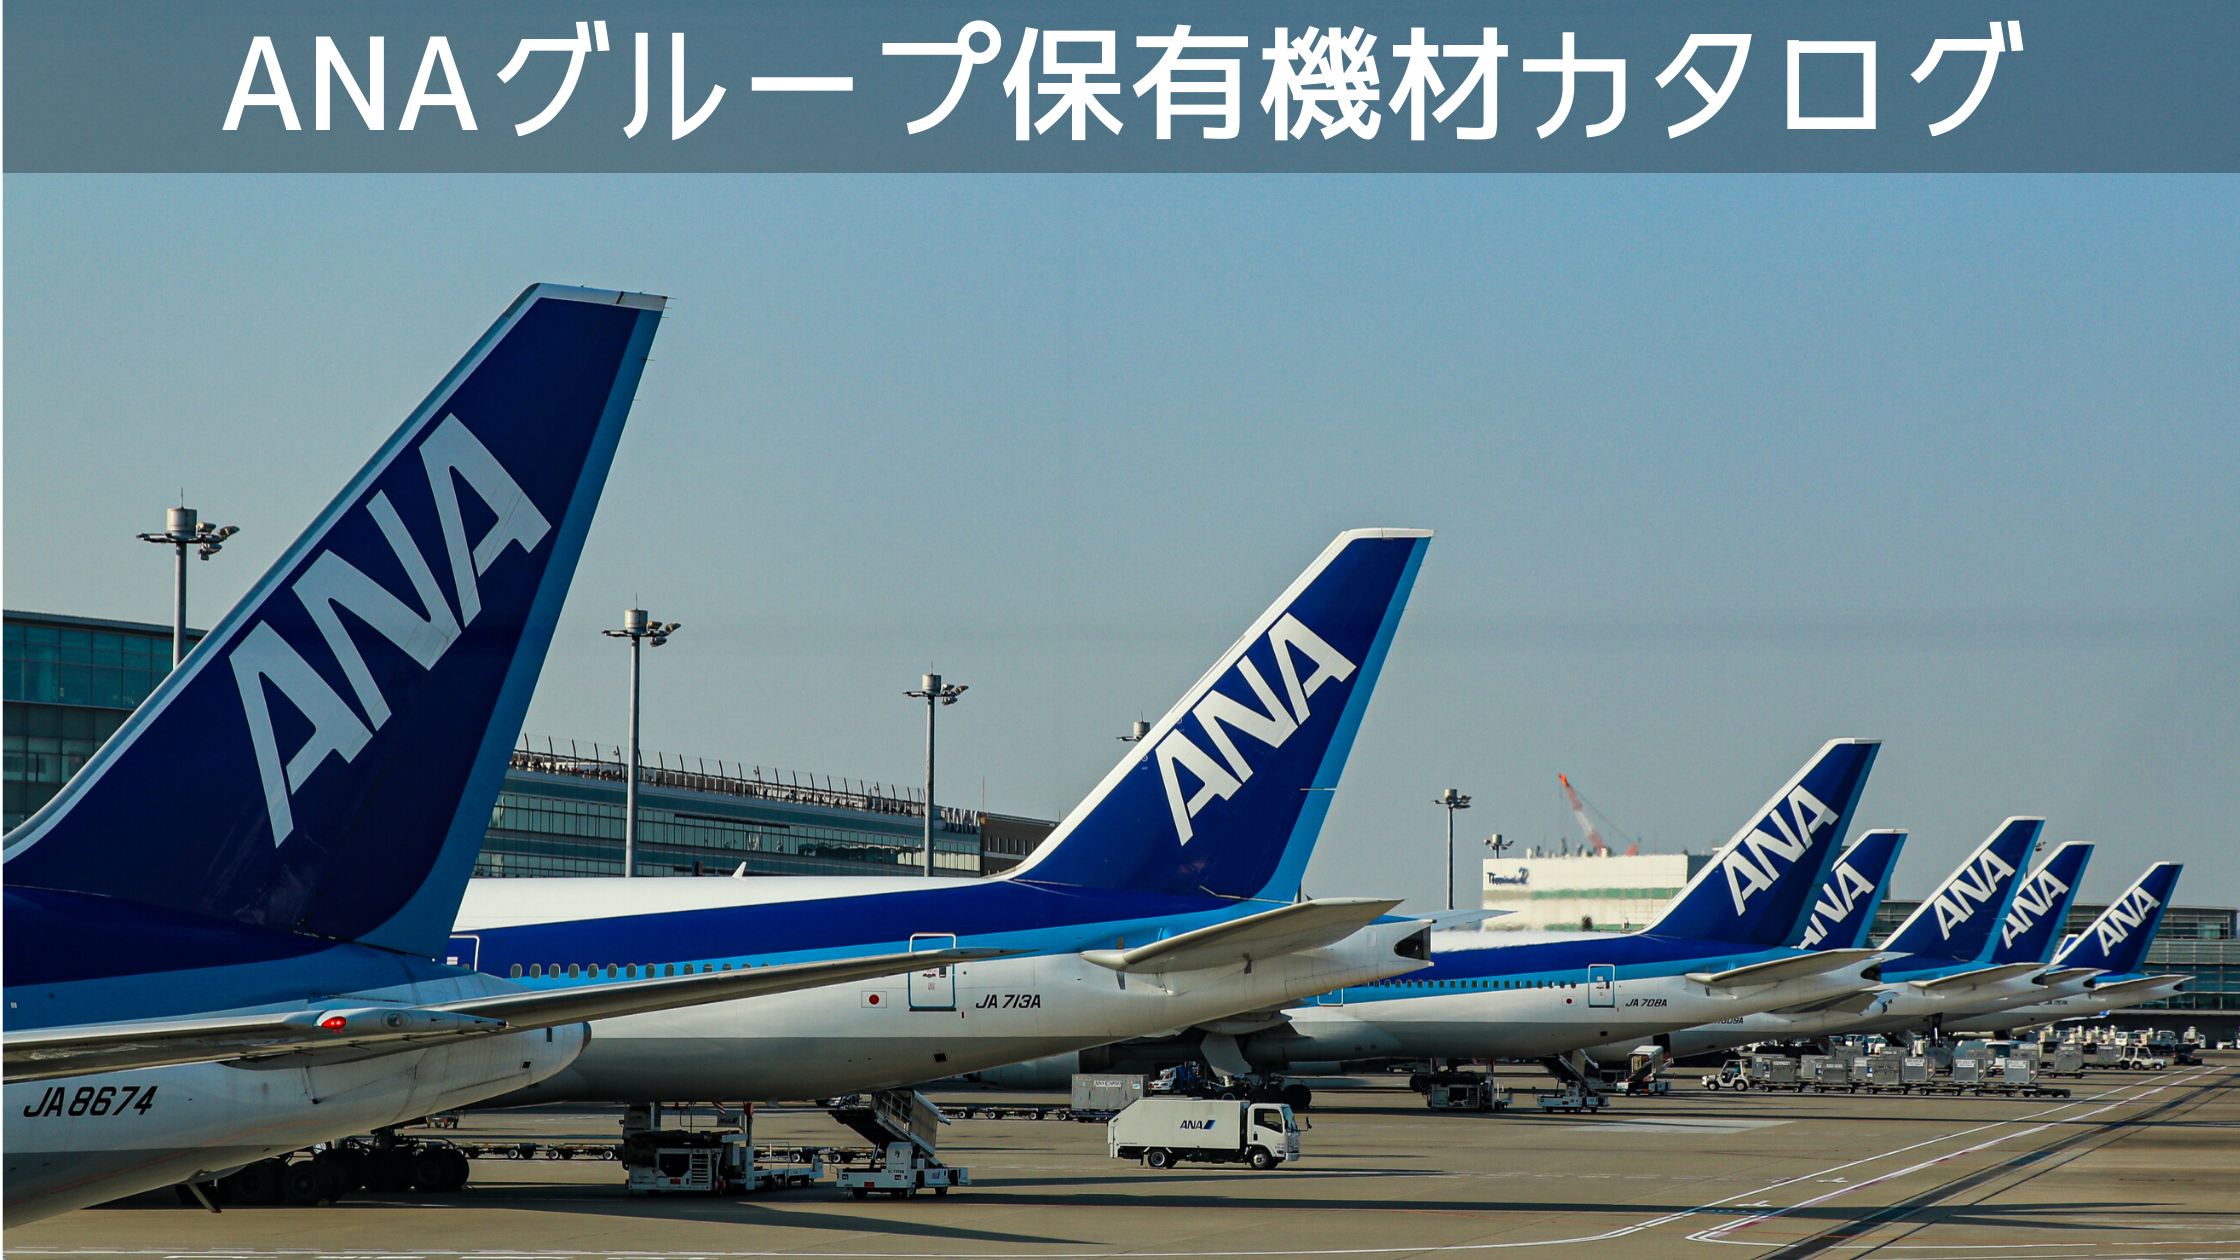 21年2月最新版 全18種類 全日本空輸 Ana グループ保有機材カタログ